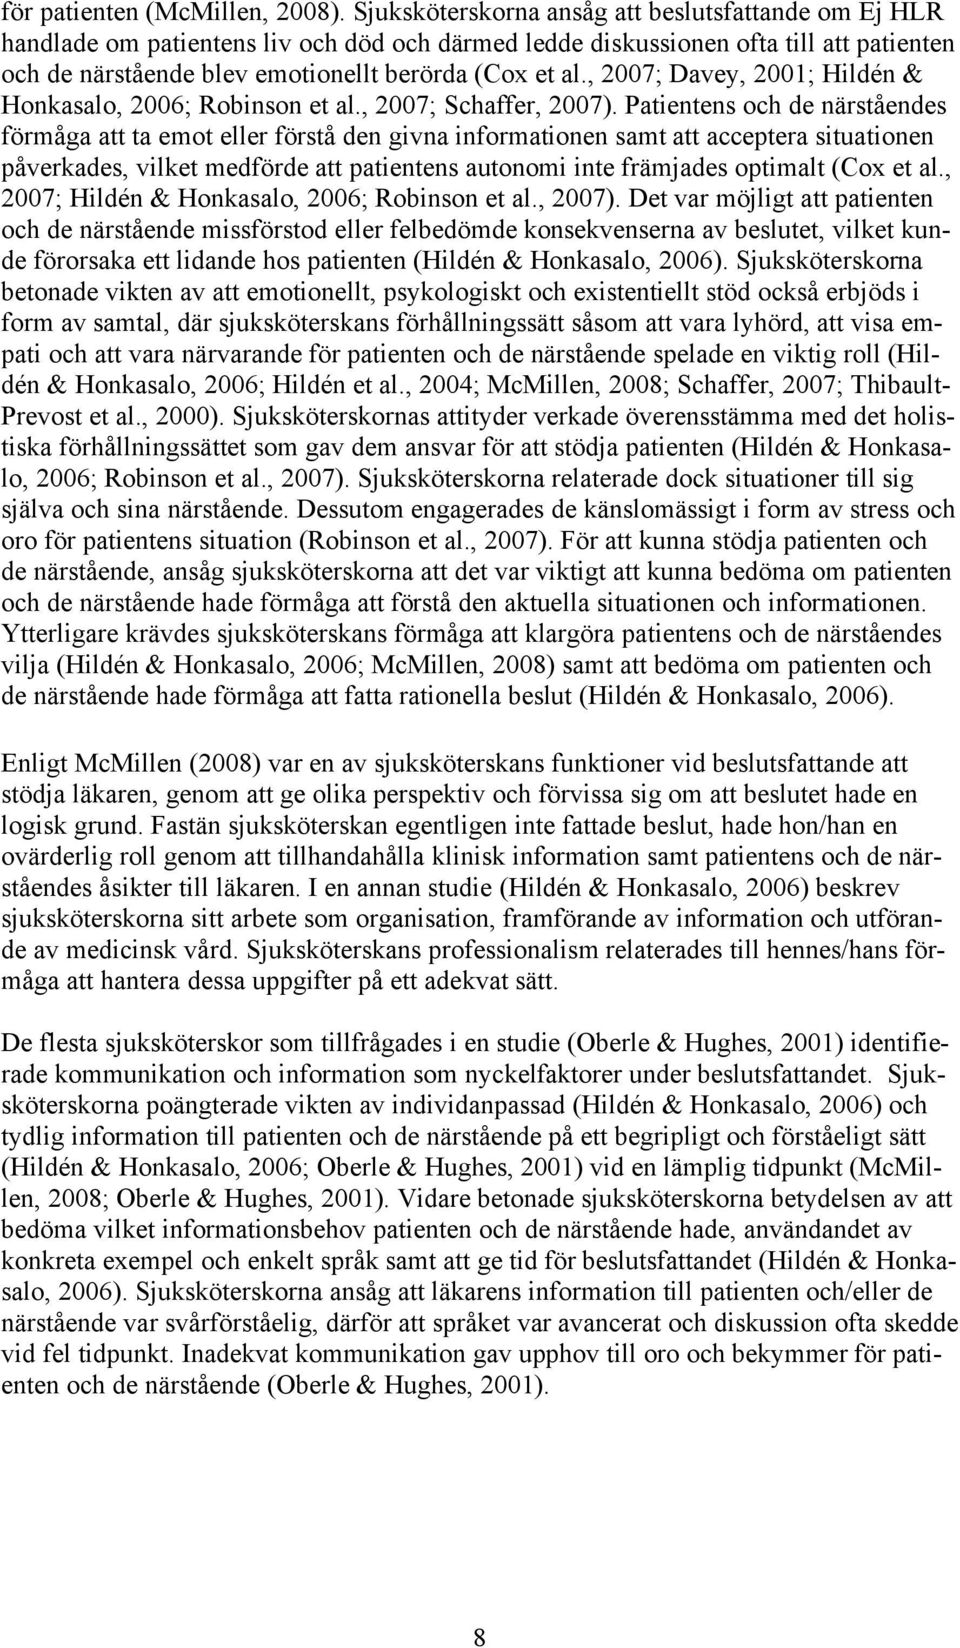 , 2007; Davey, 2001; Hildén & Honkasalo, 2006; Robinson et al., 2007; Schaffer, 2007).